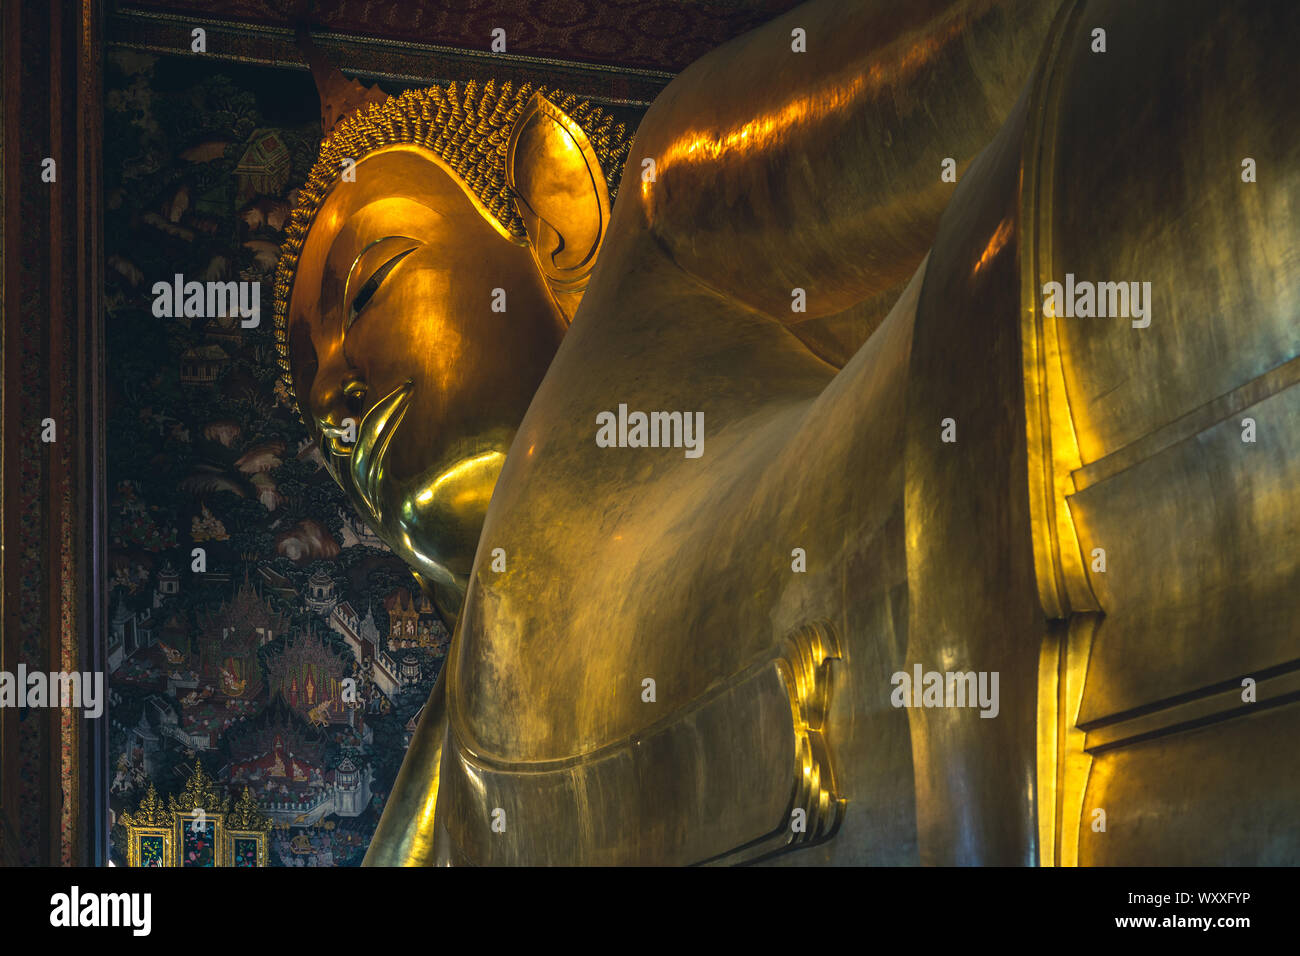 Reclining Buddha at wat pho, bangkok, thailand Stock Photo